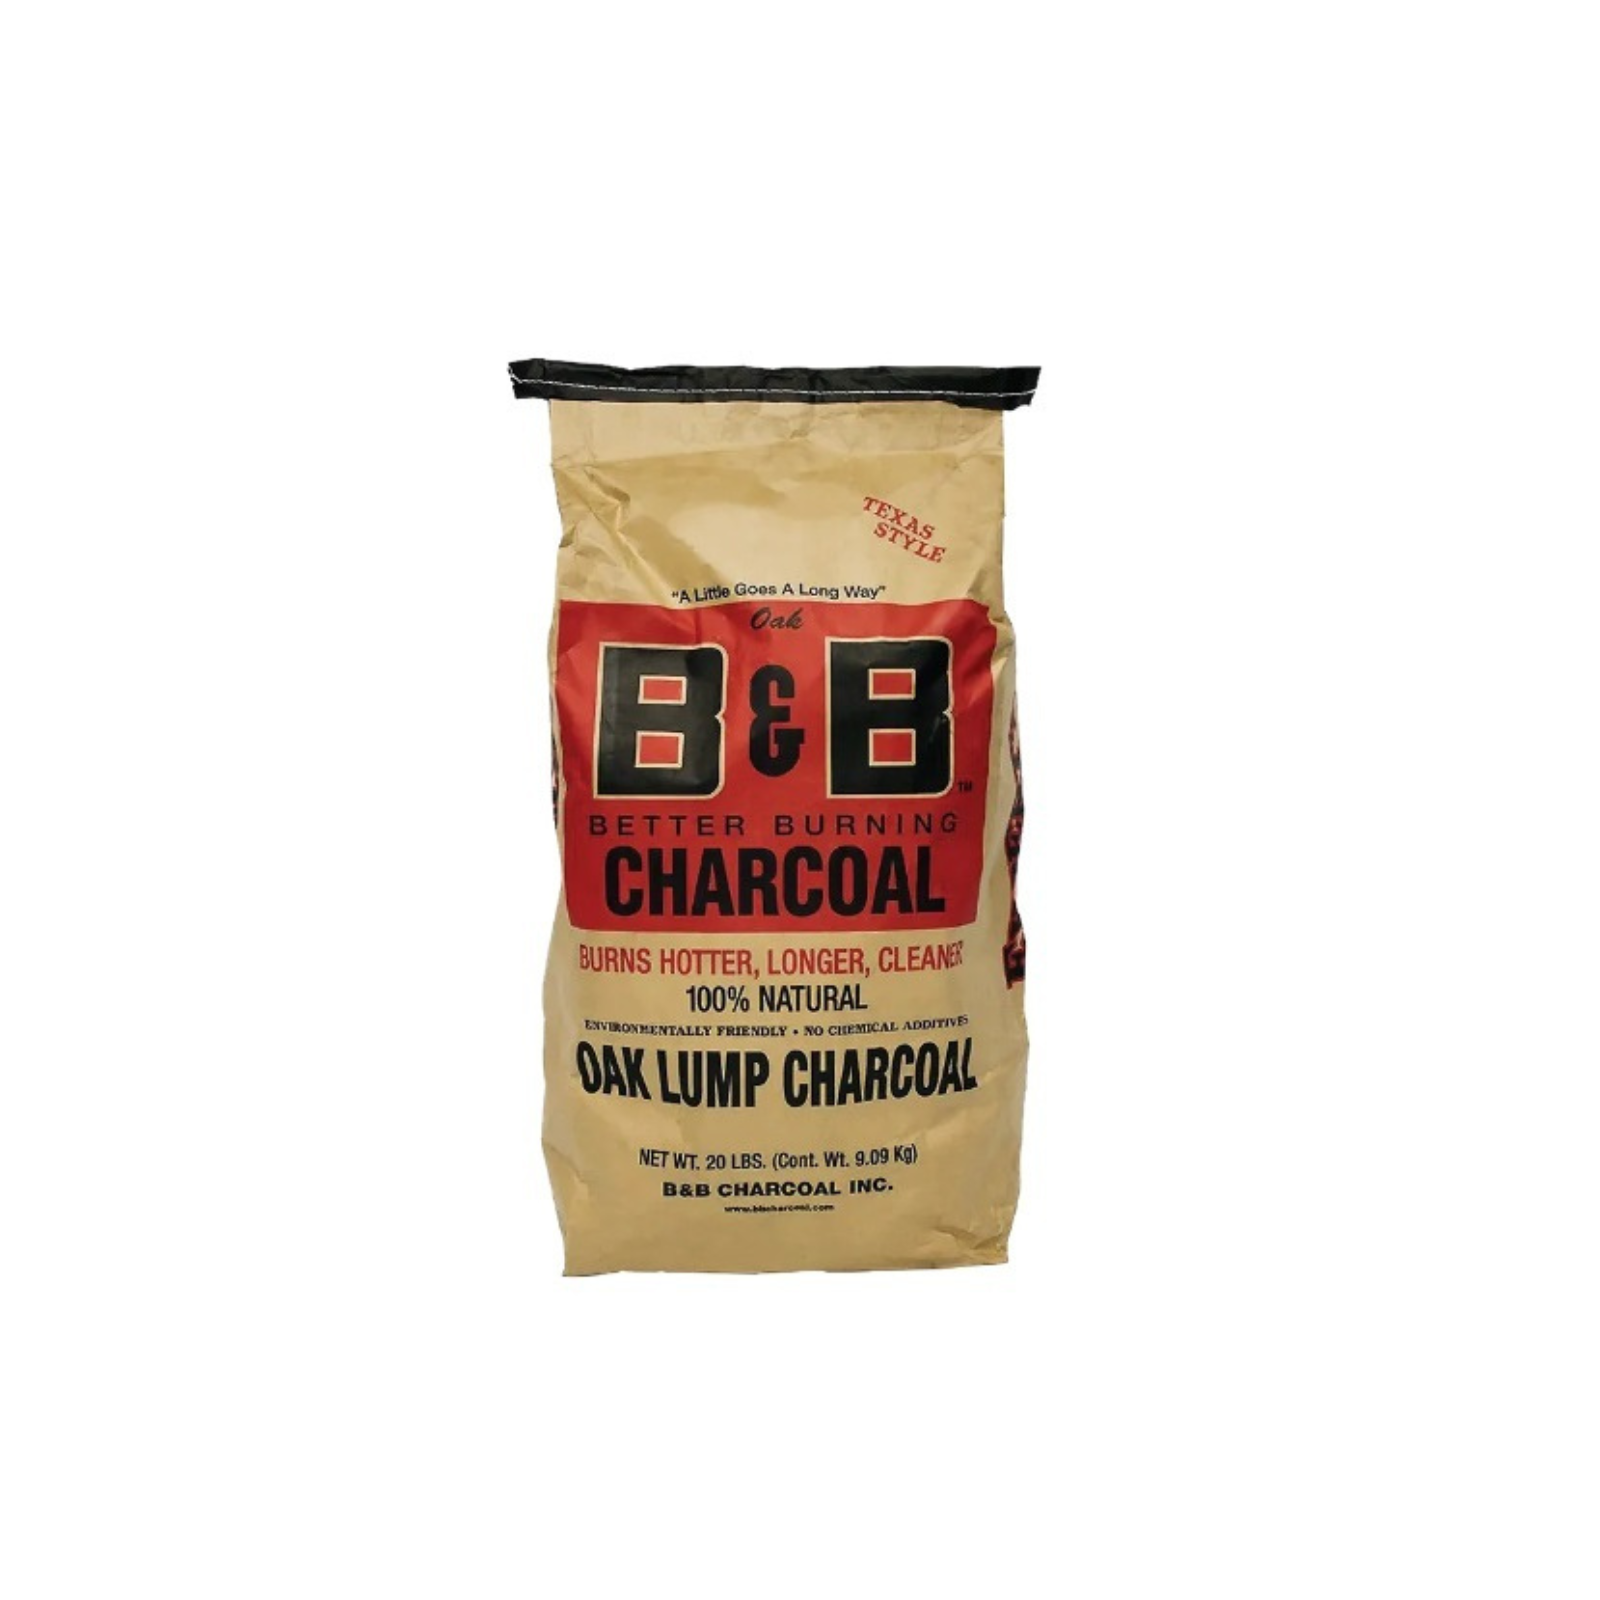 B&B Oak Lump Charcoal (20lb/9kg) - B00042